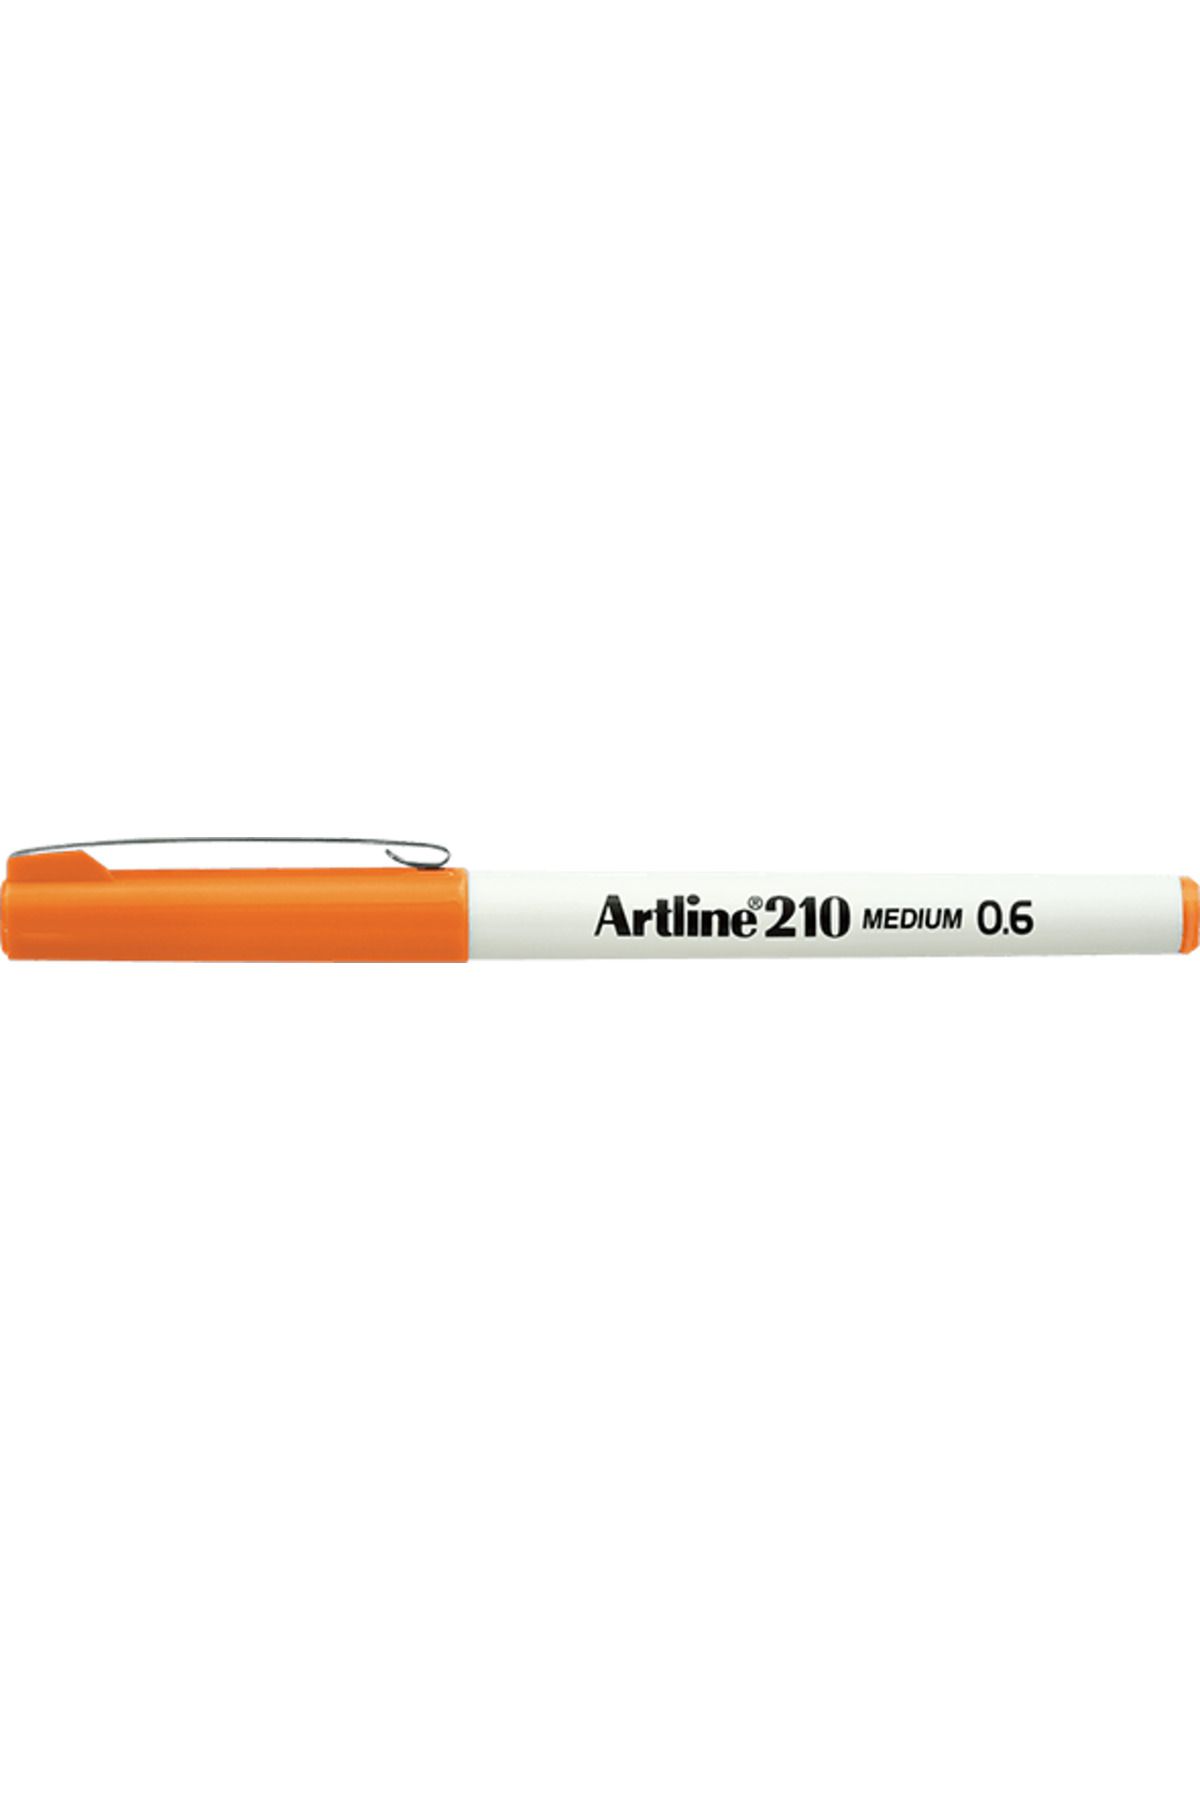 artline 210 Keçe Uçlu Kalem 0.6mm Medium Liner Turuncu